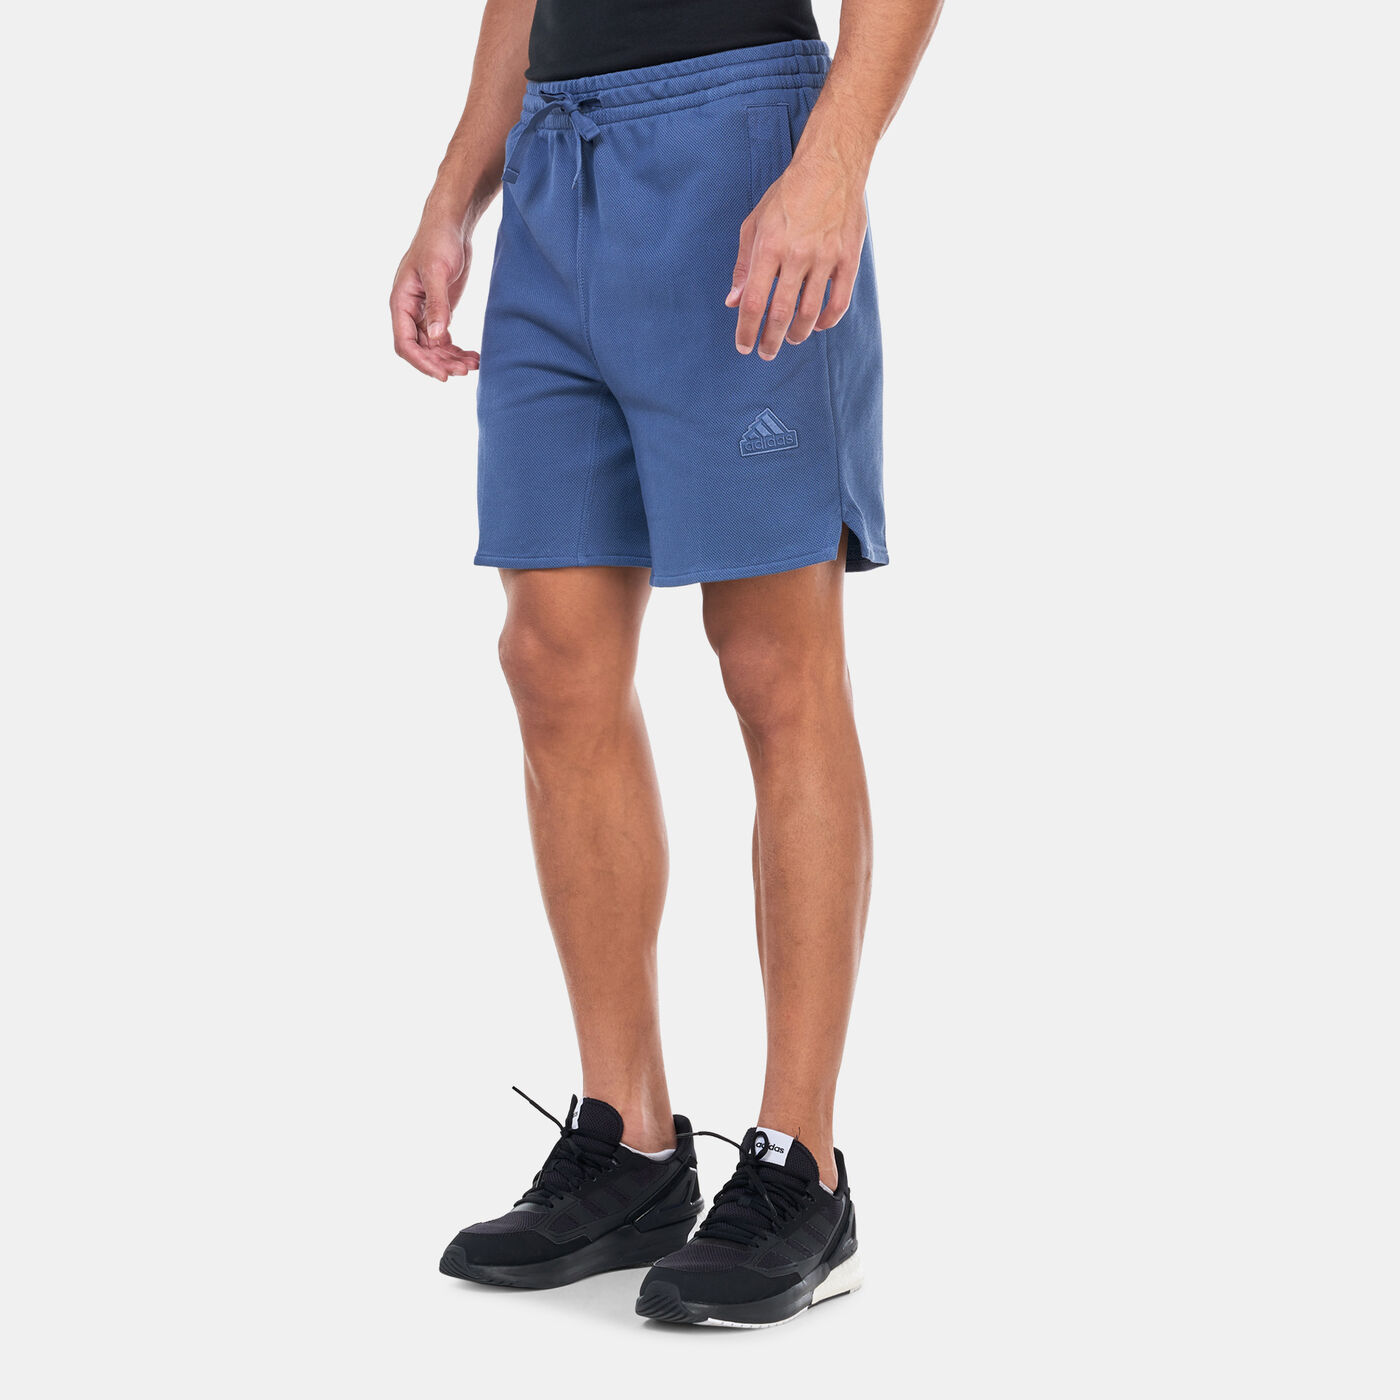 Men's Lounge Shorts